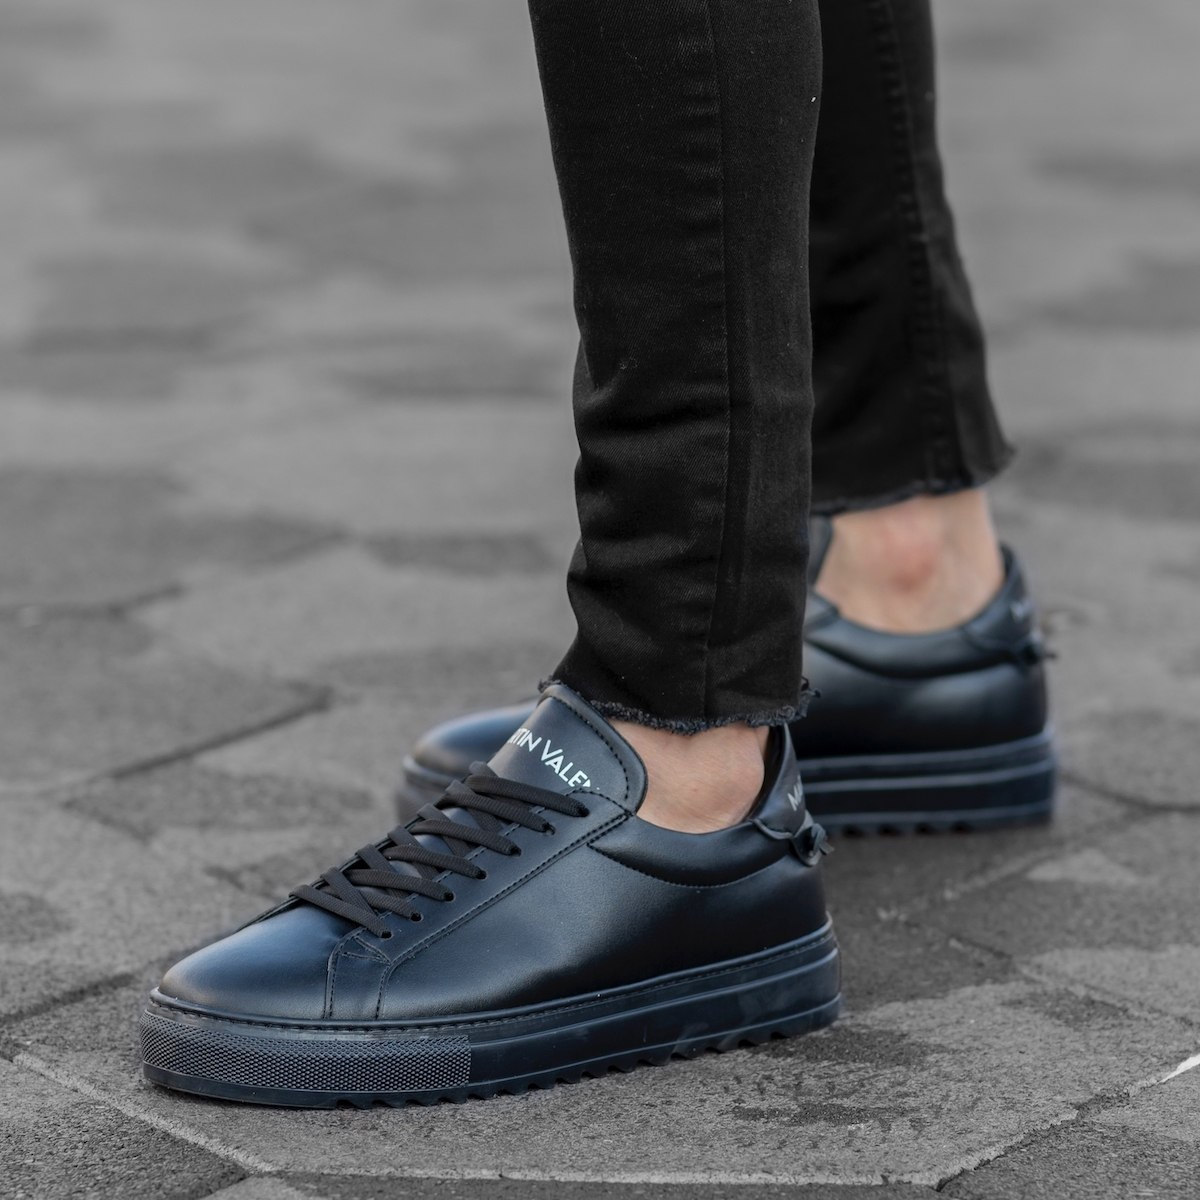 Herren Low Top Sneakers Schuhe in schwarz - 2